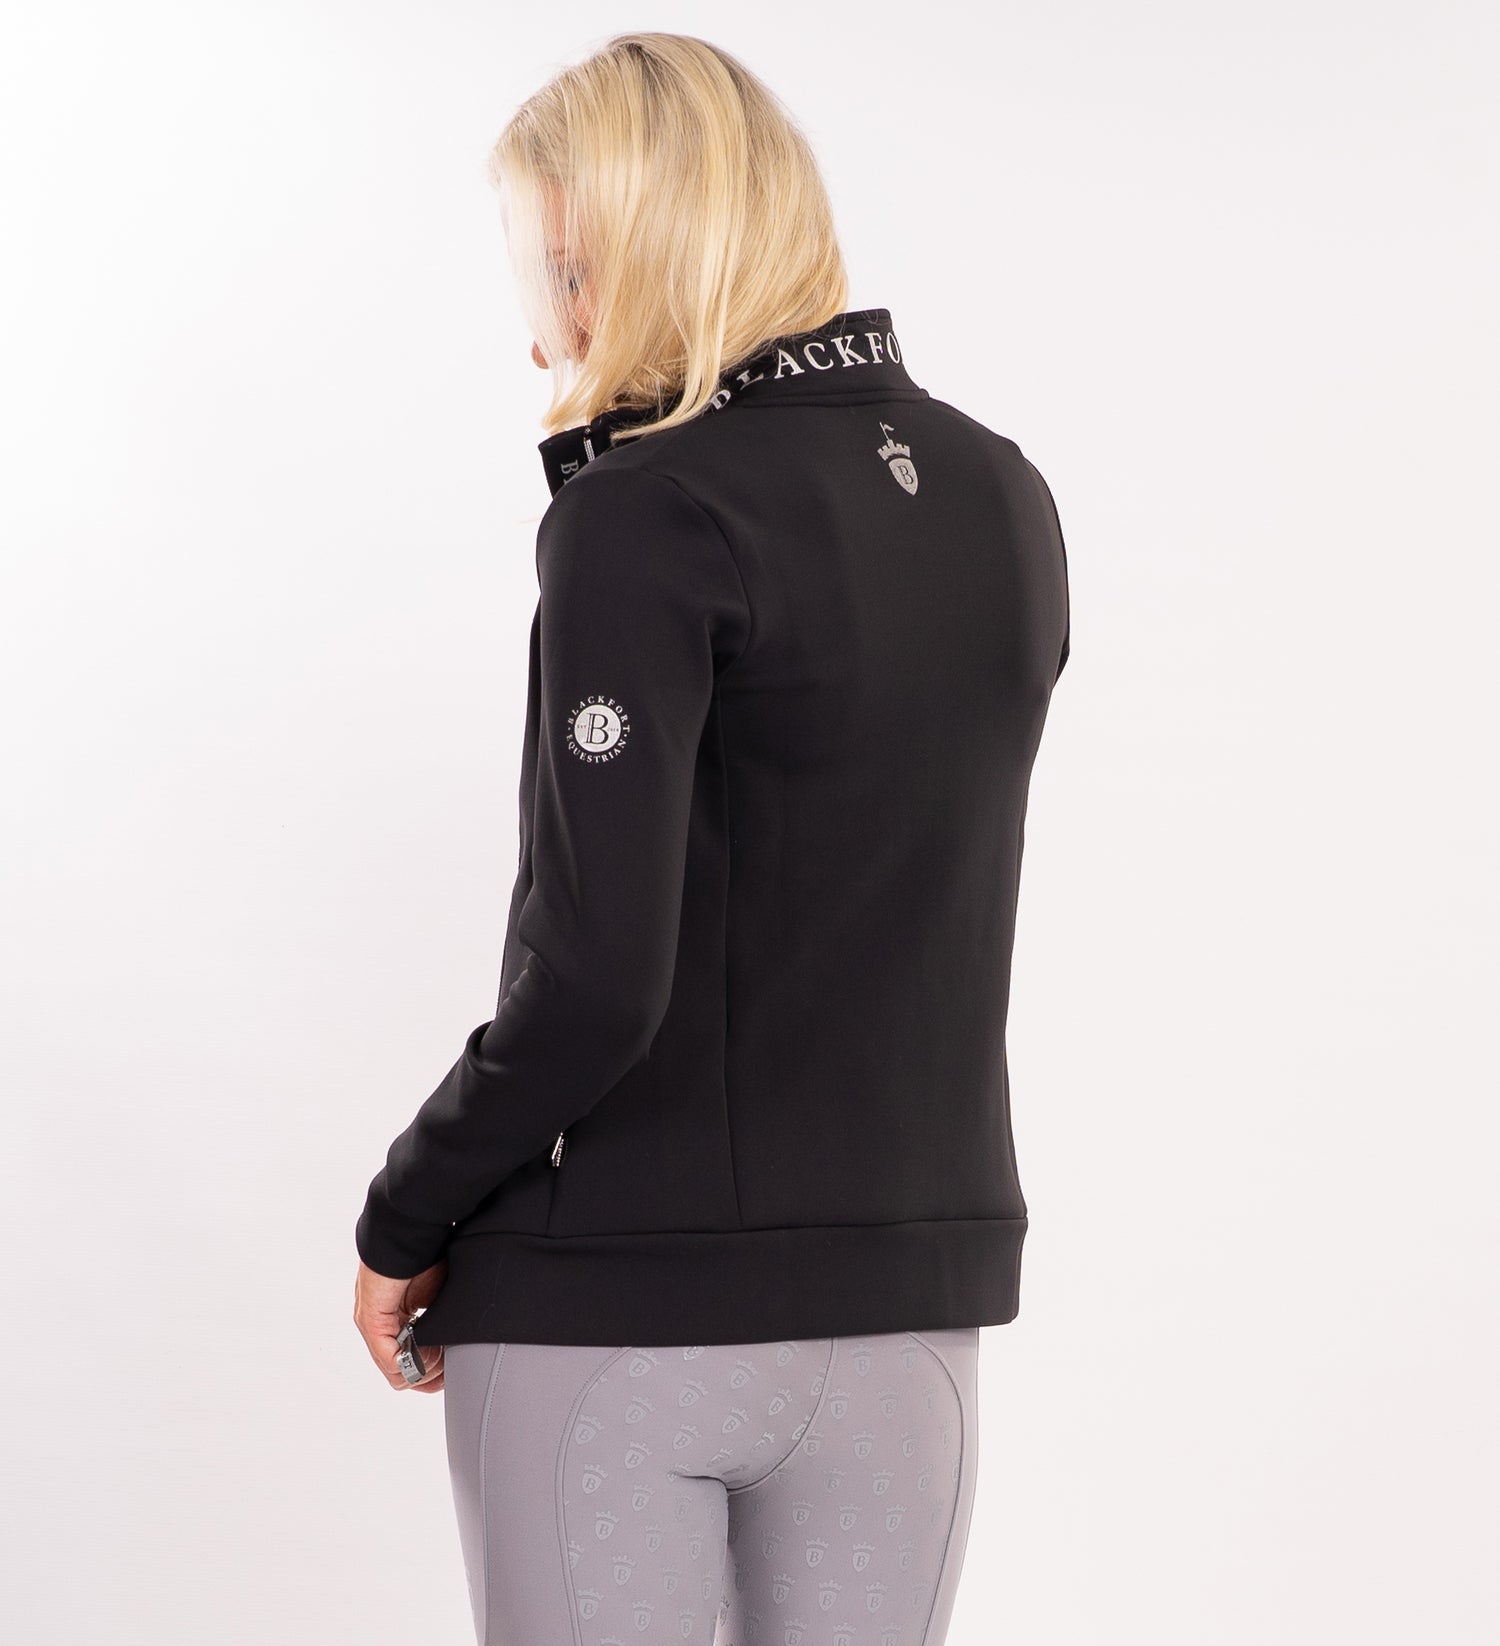 Blackfort Equestrian ladies zip up jacket black/silver